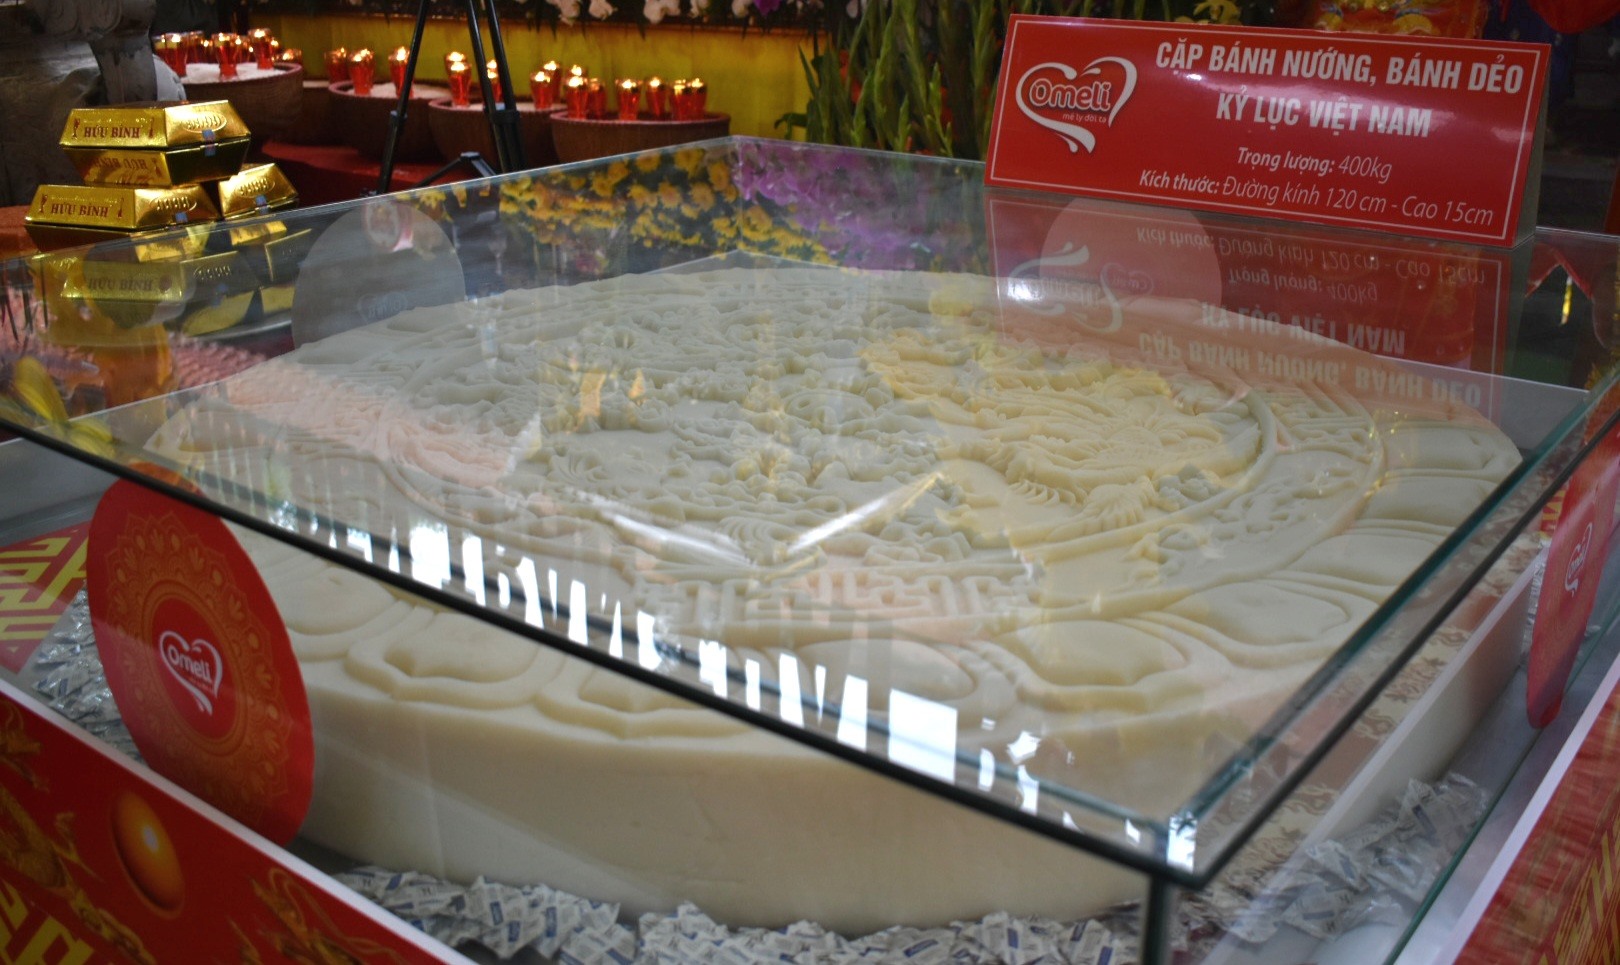 Cận cảnh cặp bánh nướng, bánh dẻo kỷ lục là cặp bánh lớn nhất Việt Nam dâng tại Đền Trần Thái Bình. Ảnh: Trung Du